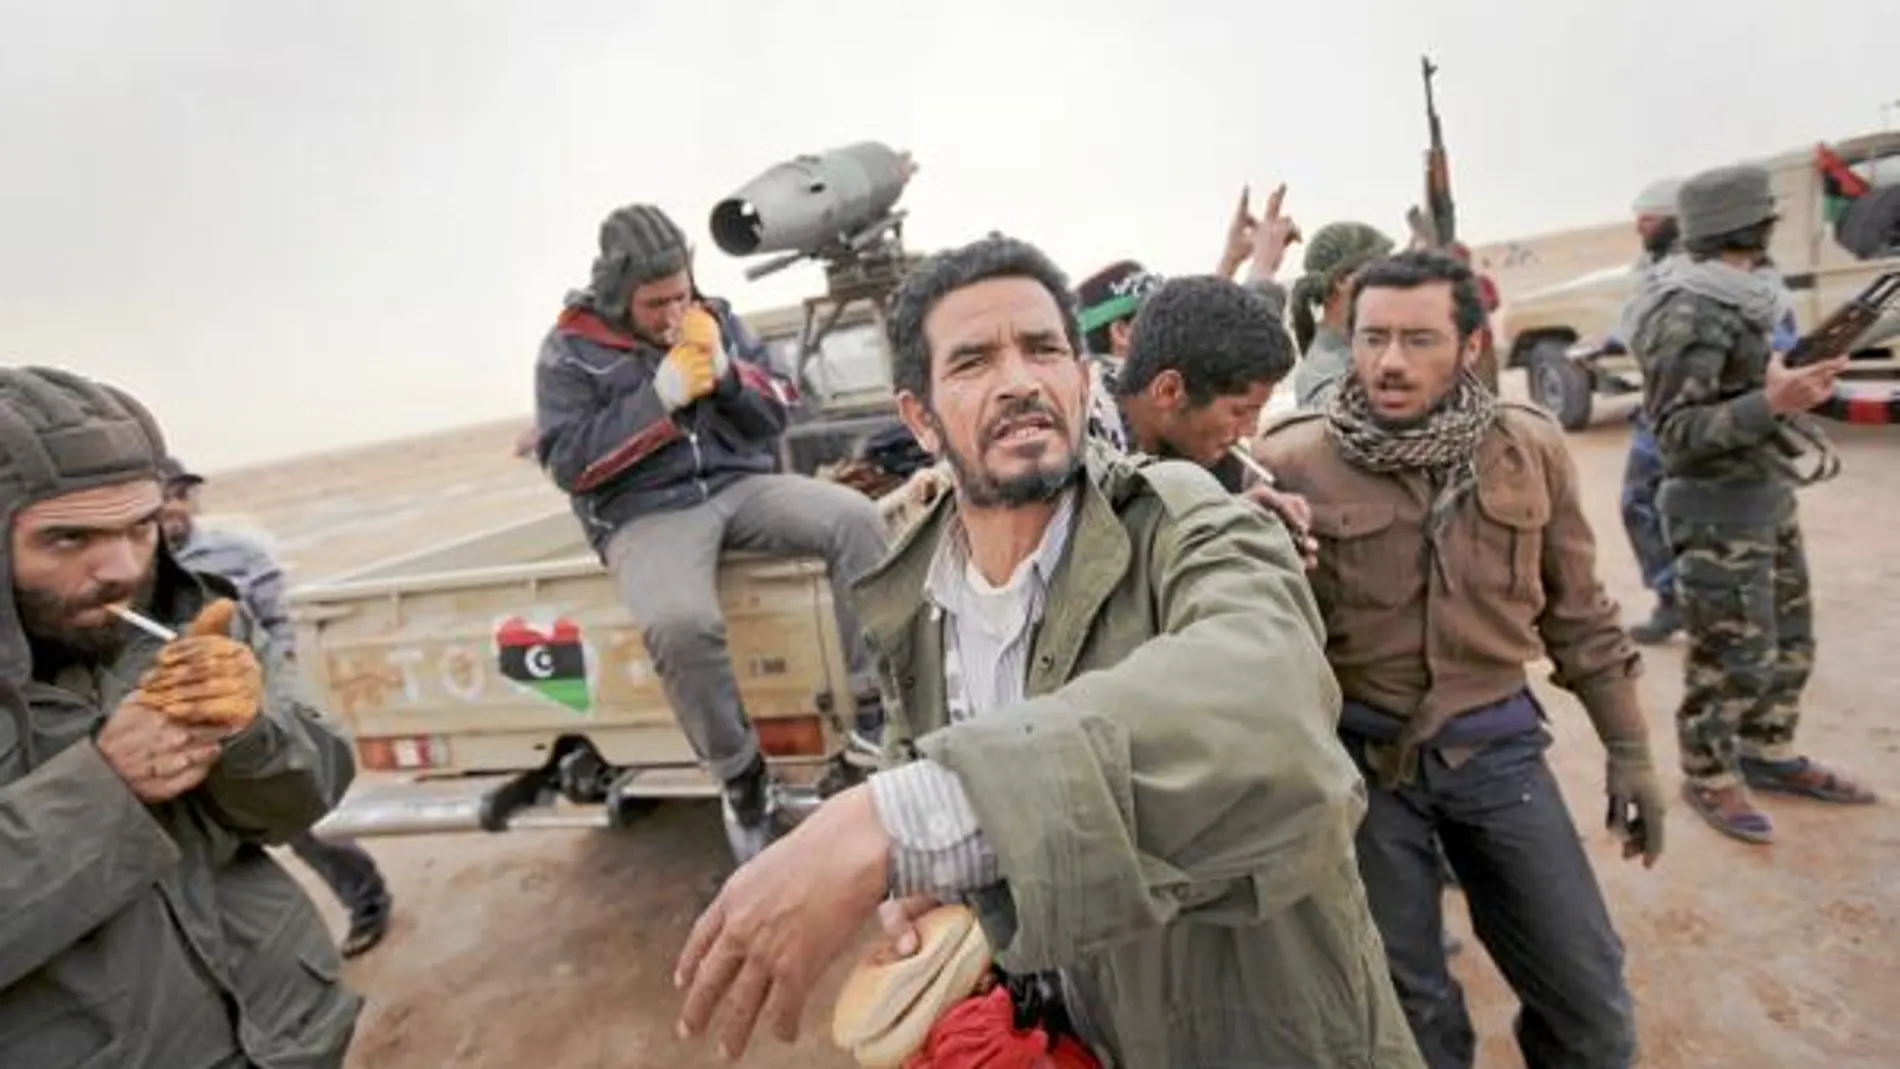 Rebeldes libios tras conocer que un avión había bombardeado ayer sus posiciones